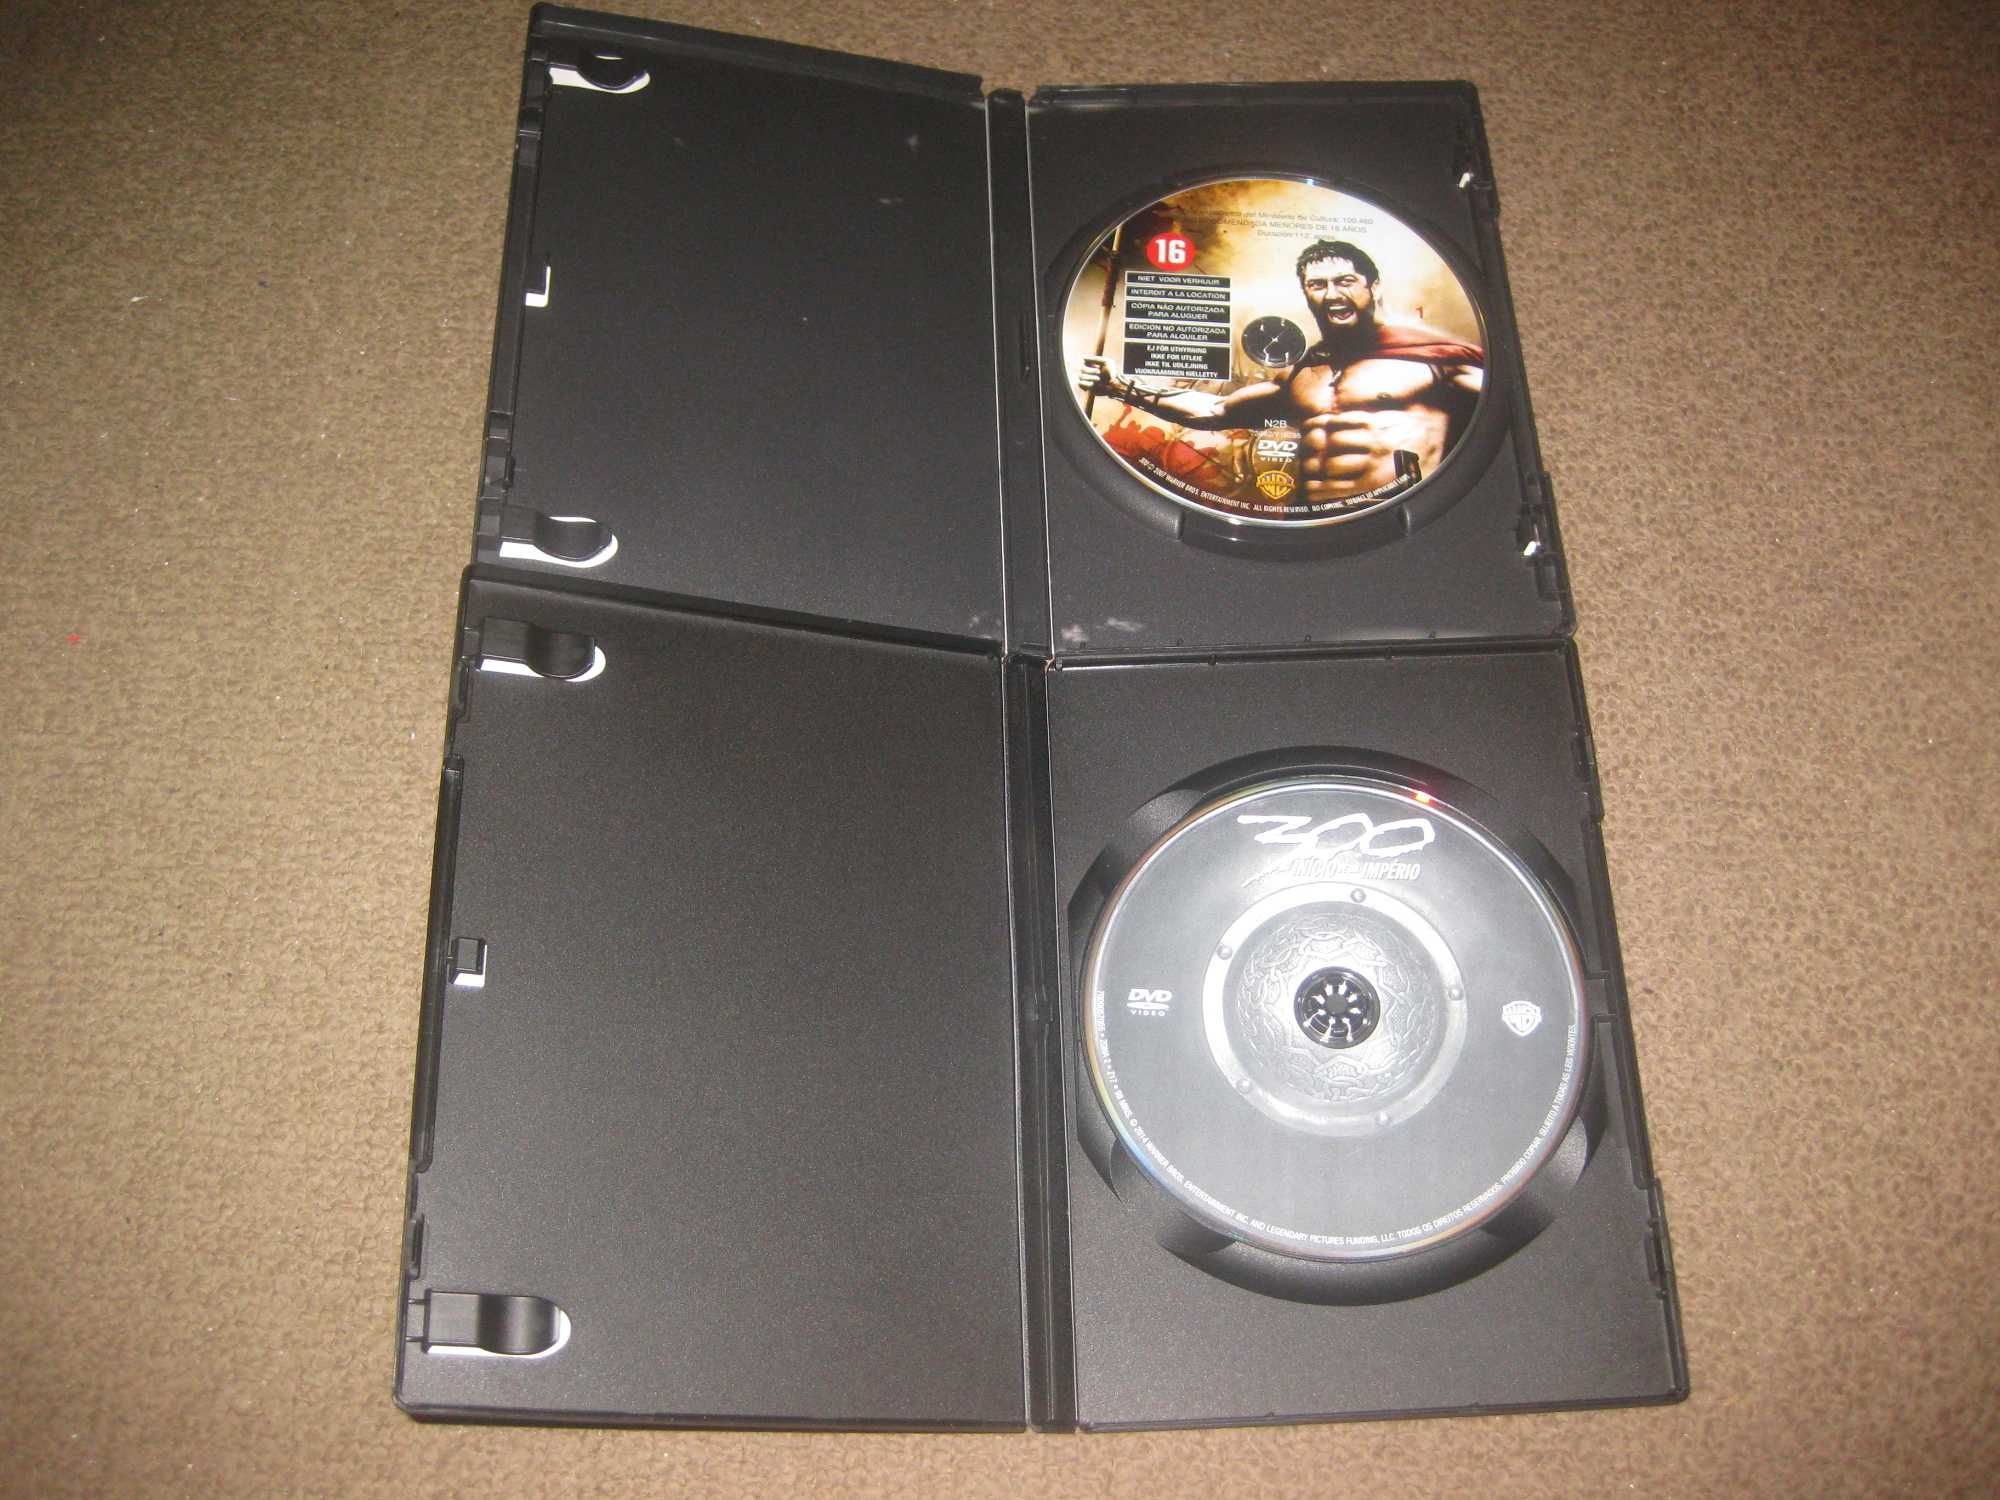 Colecção Completa em DVD "300"